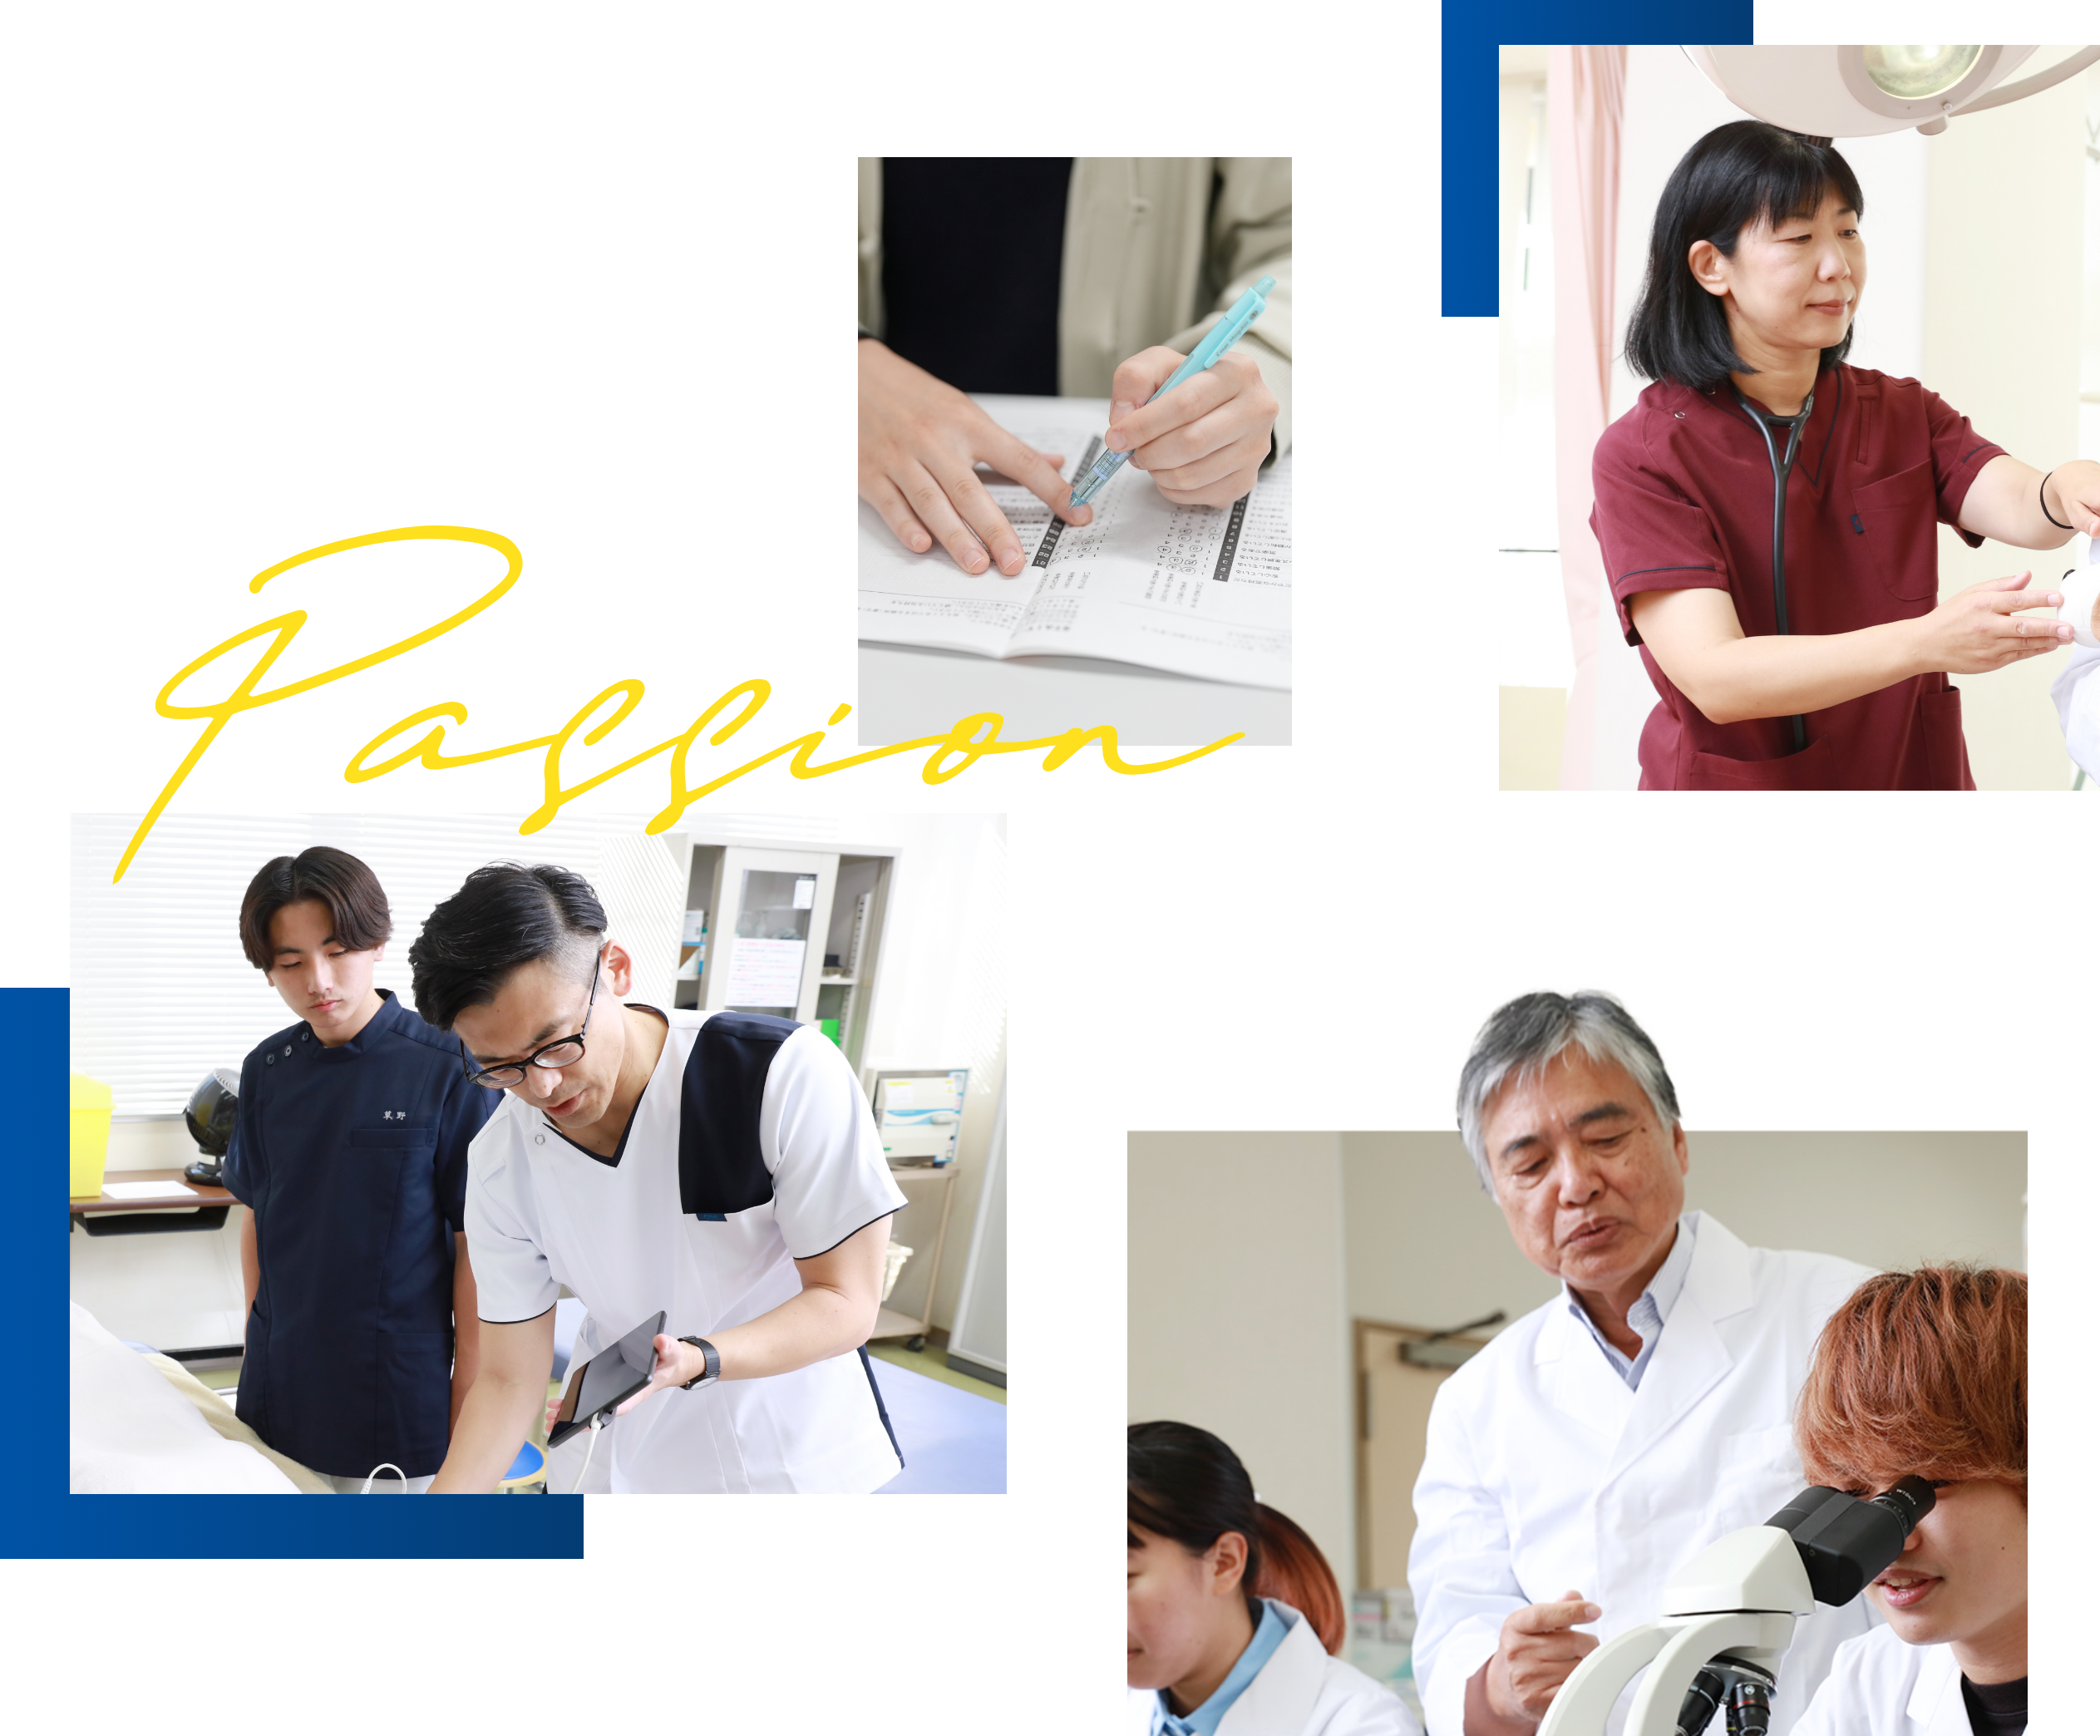 九州医療科学大学 彼らの情熱で新たな未来を繋げる。